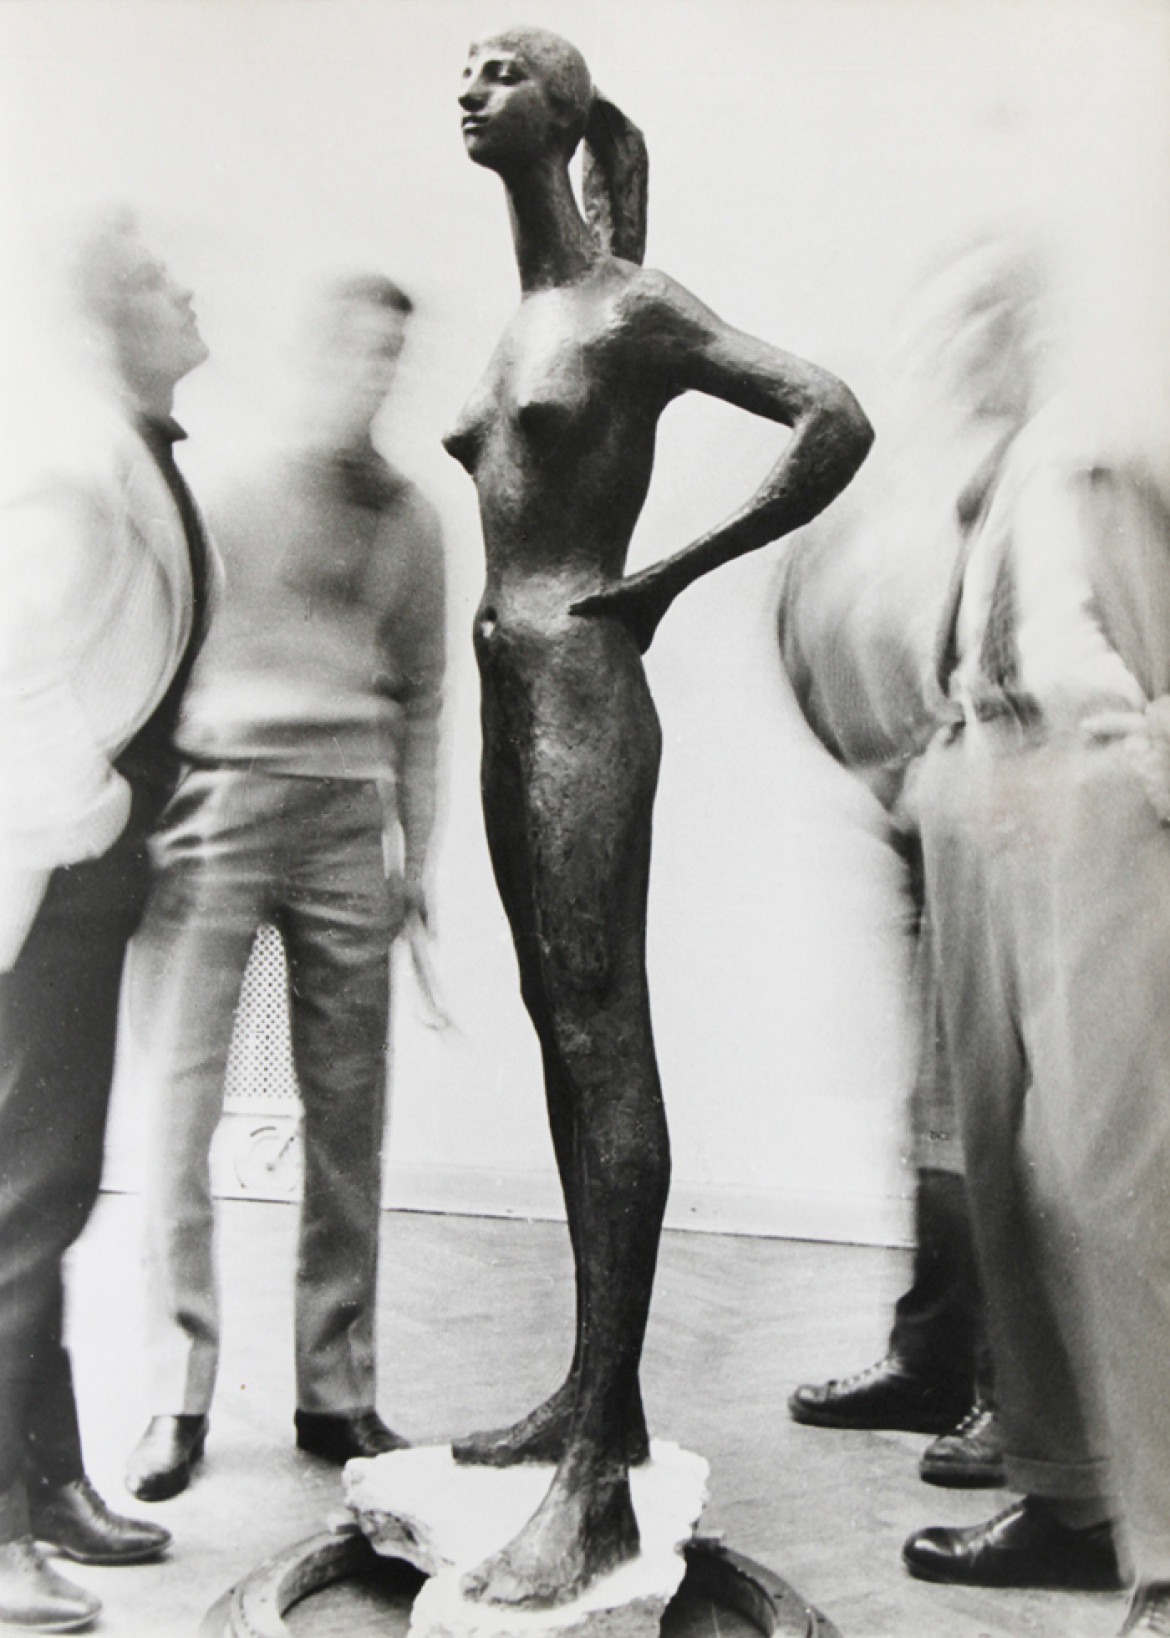 Jerzy Kosiński, "W galerii sztuki", 1957 